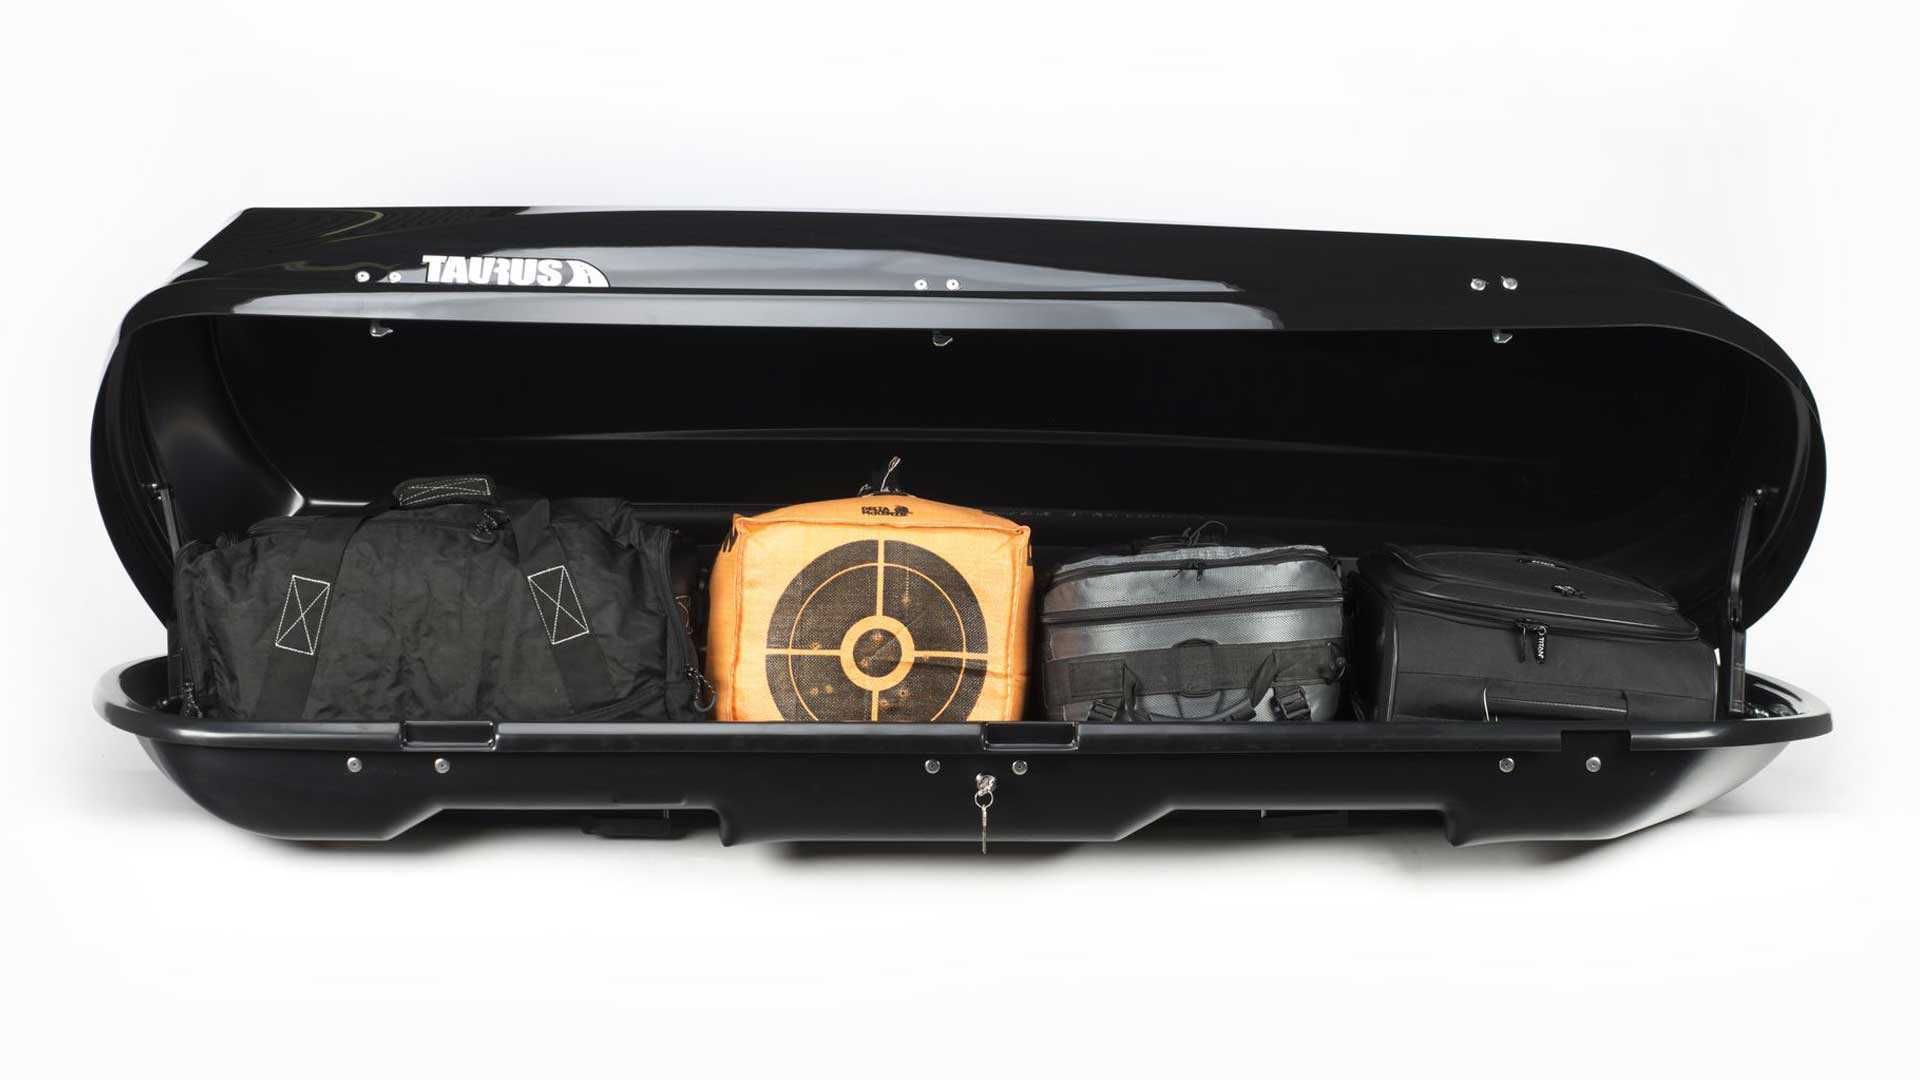 Box dachowy TAURUS XTREME II 450 - czarny połysk, SUPER CENA